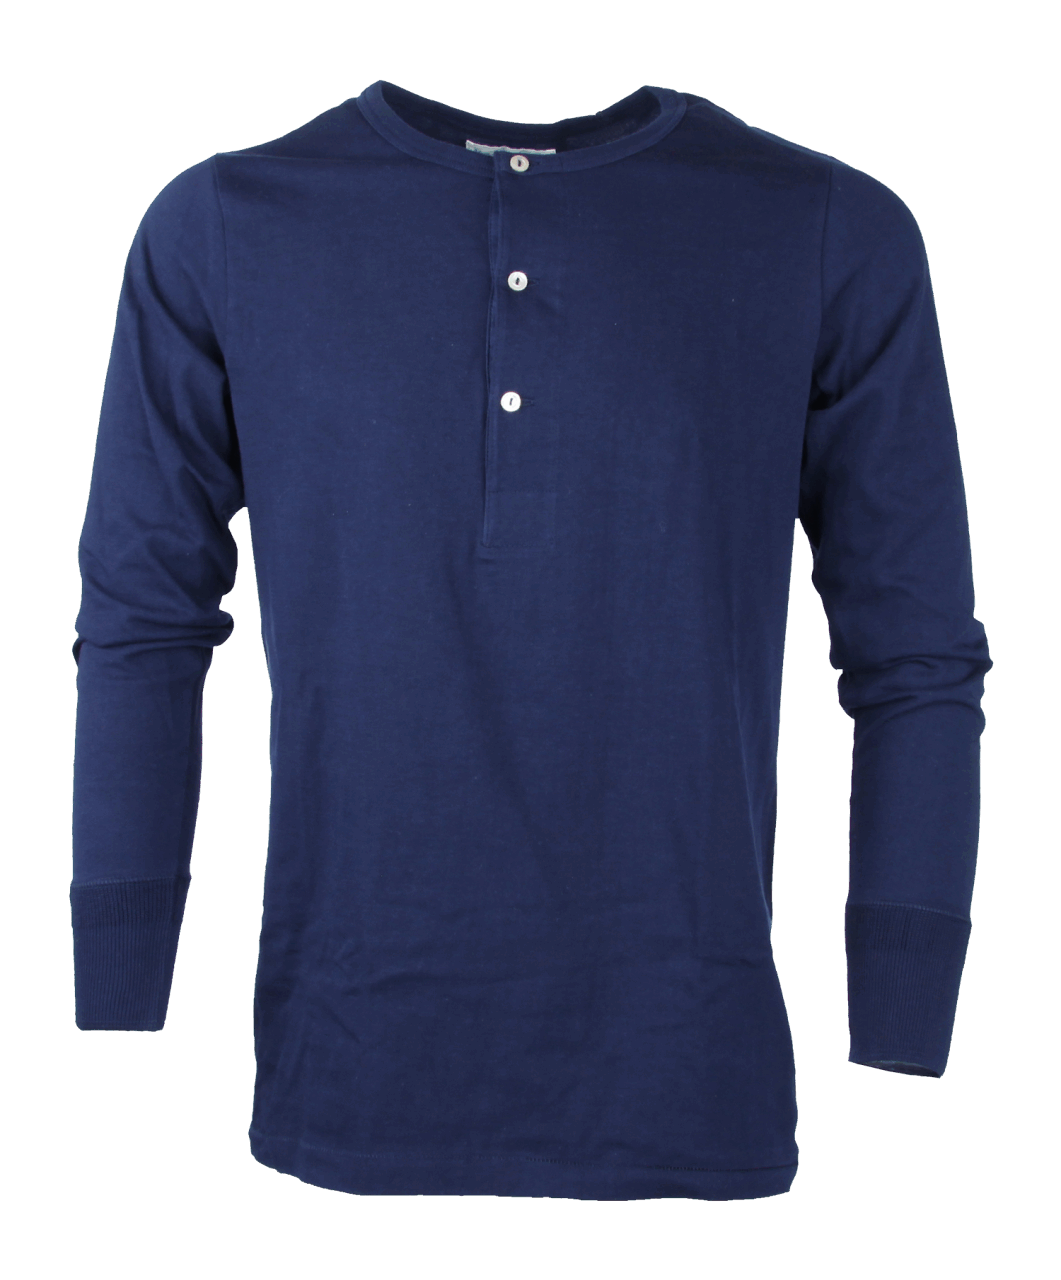 Merz b. Schwanen Shirt 206 - ink blue